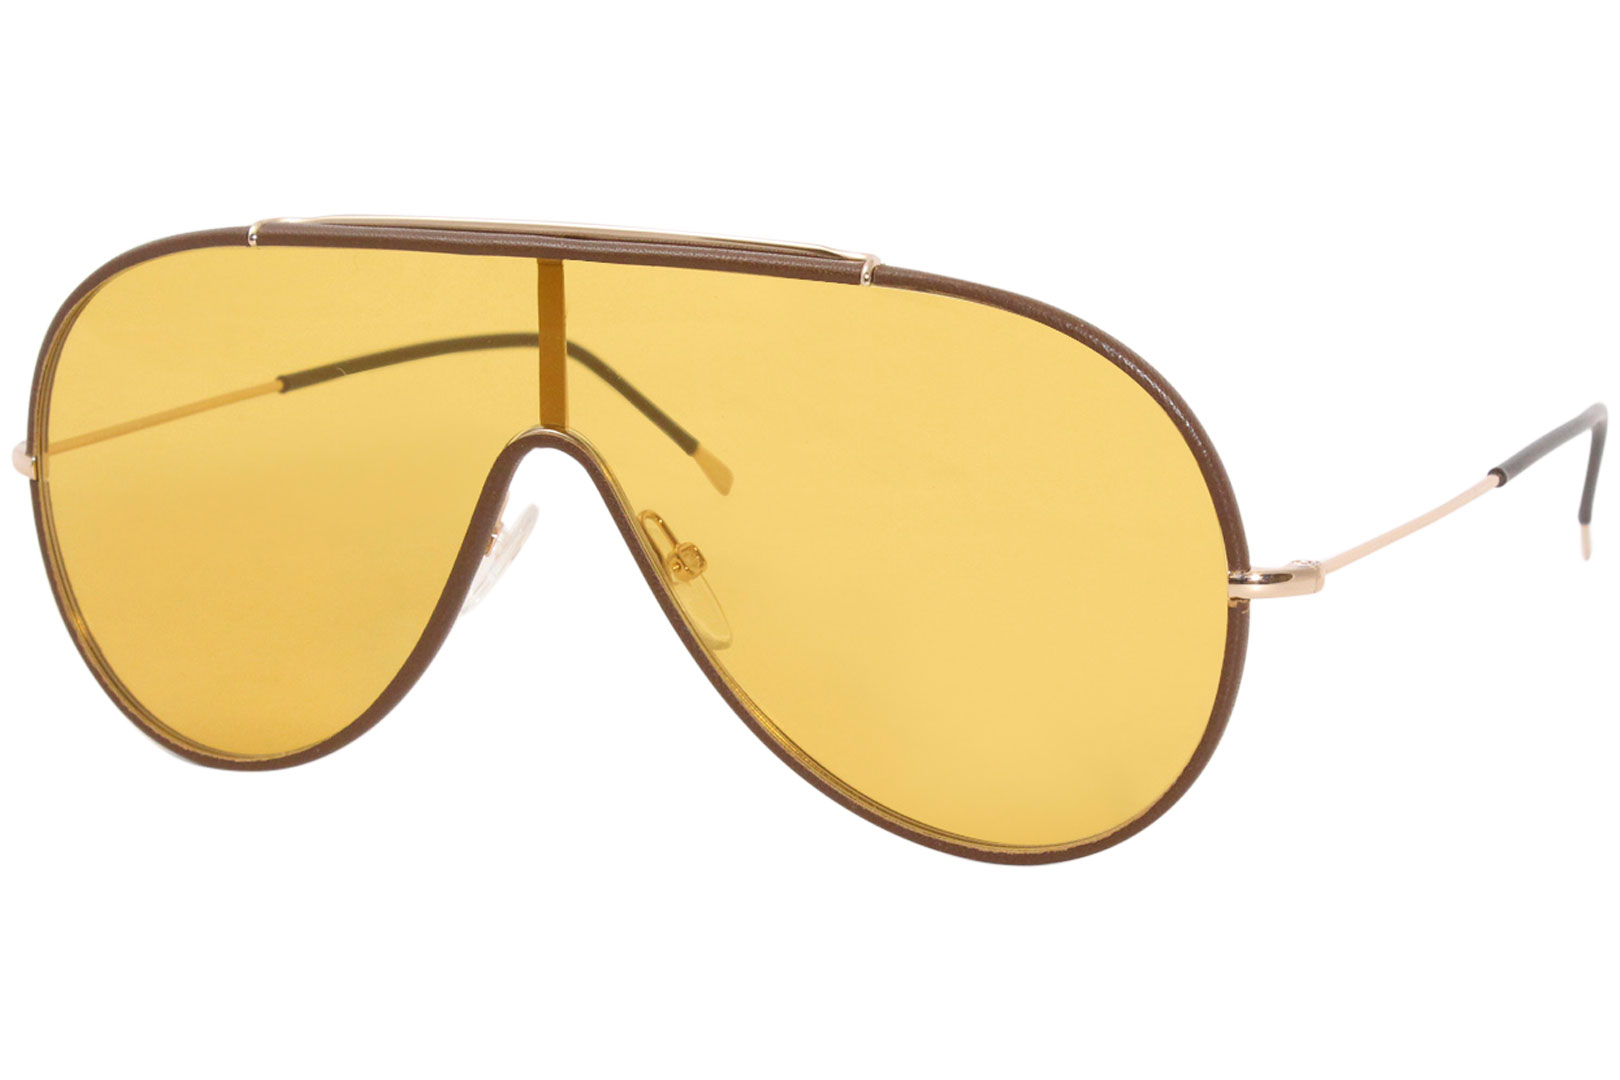 Tom Ford Mack TF671 Sunglasses Women's Fashion Shield Shades 